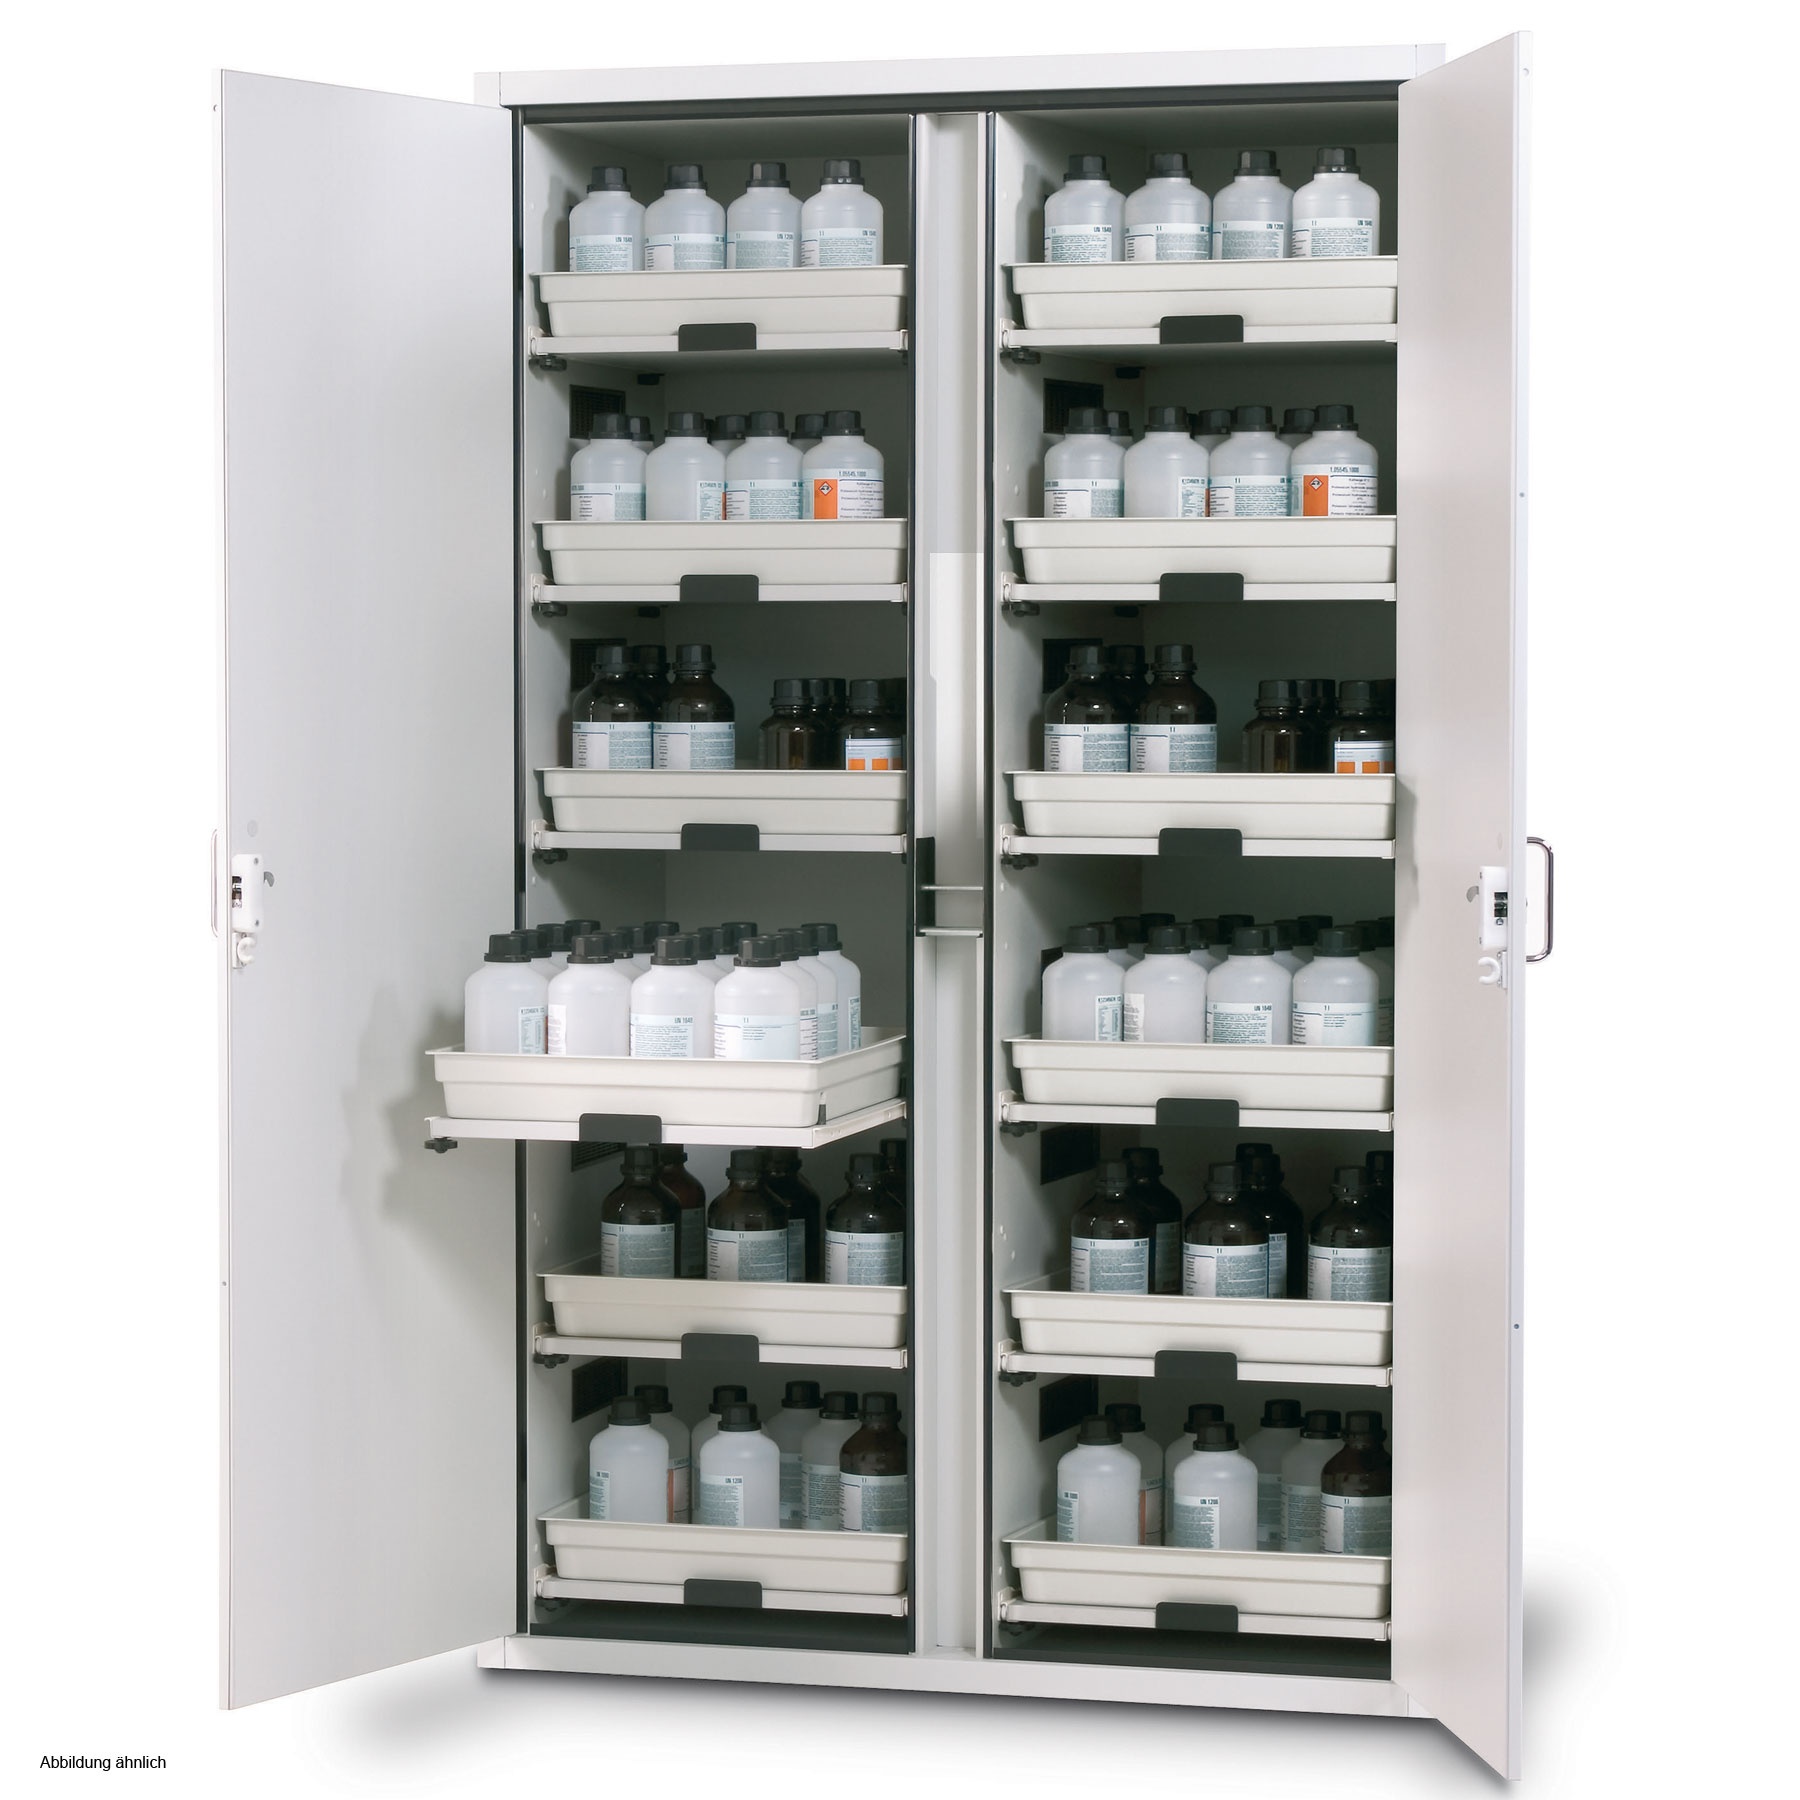 Огнеопасных лекарственных средств. Сейф шкаф для хранения медикаментов СХМ-1. Шкаф asecos 90 en. Шкаф для хранения кислот и щелочей 600 ШР-ХС. Шкаф для хранения химических реактивов ЛВЖ-700в.